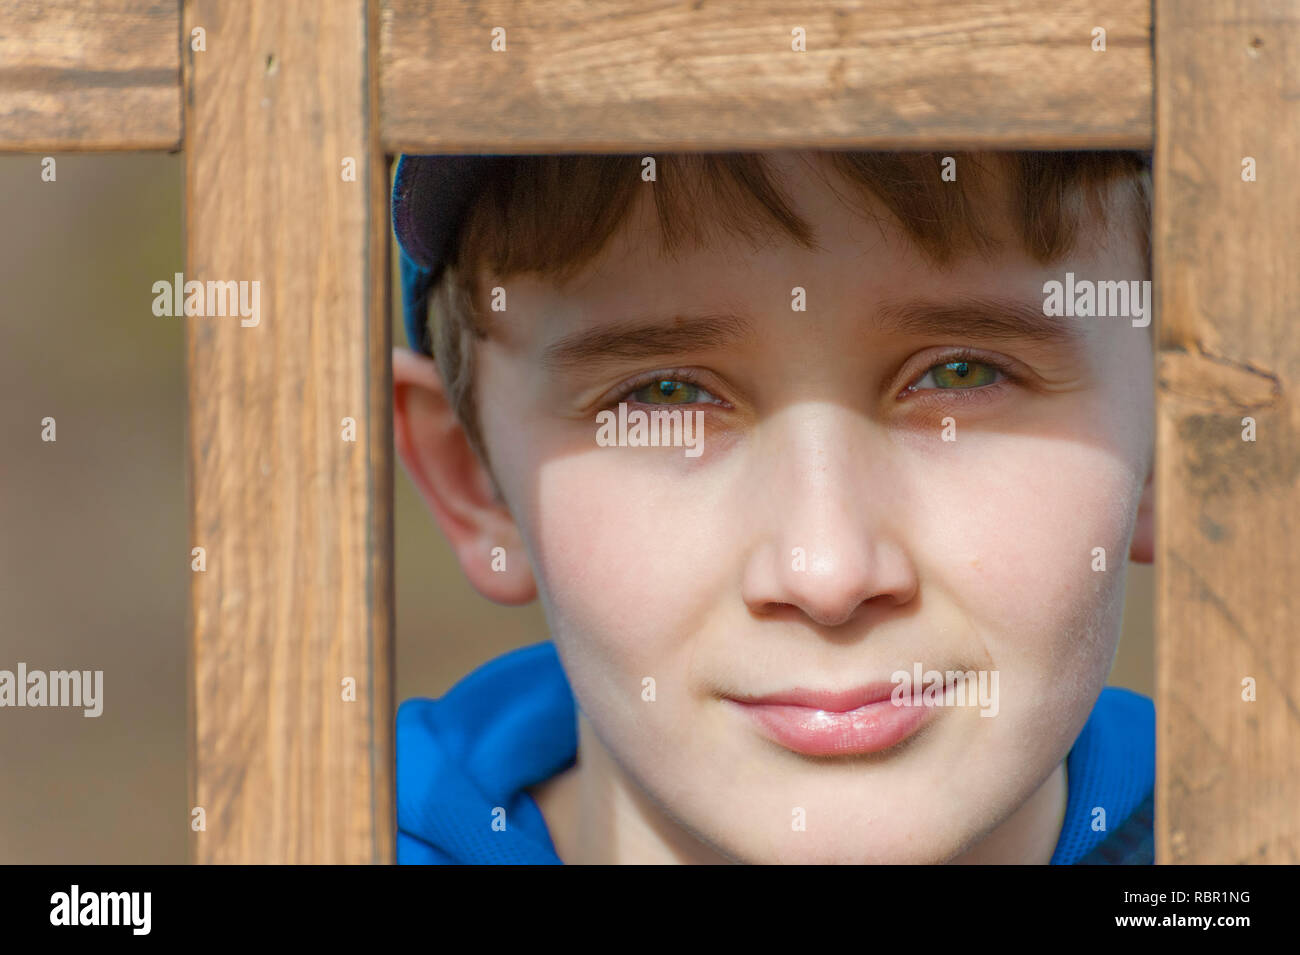 Un giovane ragazzo con bellissimi occhi verdi guarda la fotocamera da dietro un latice in legno. Foto Stock